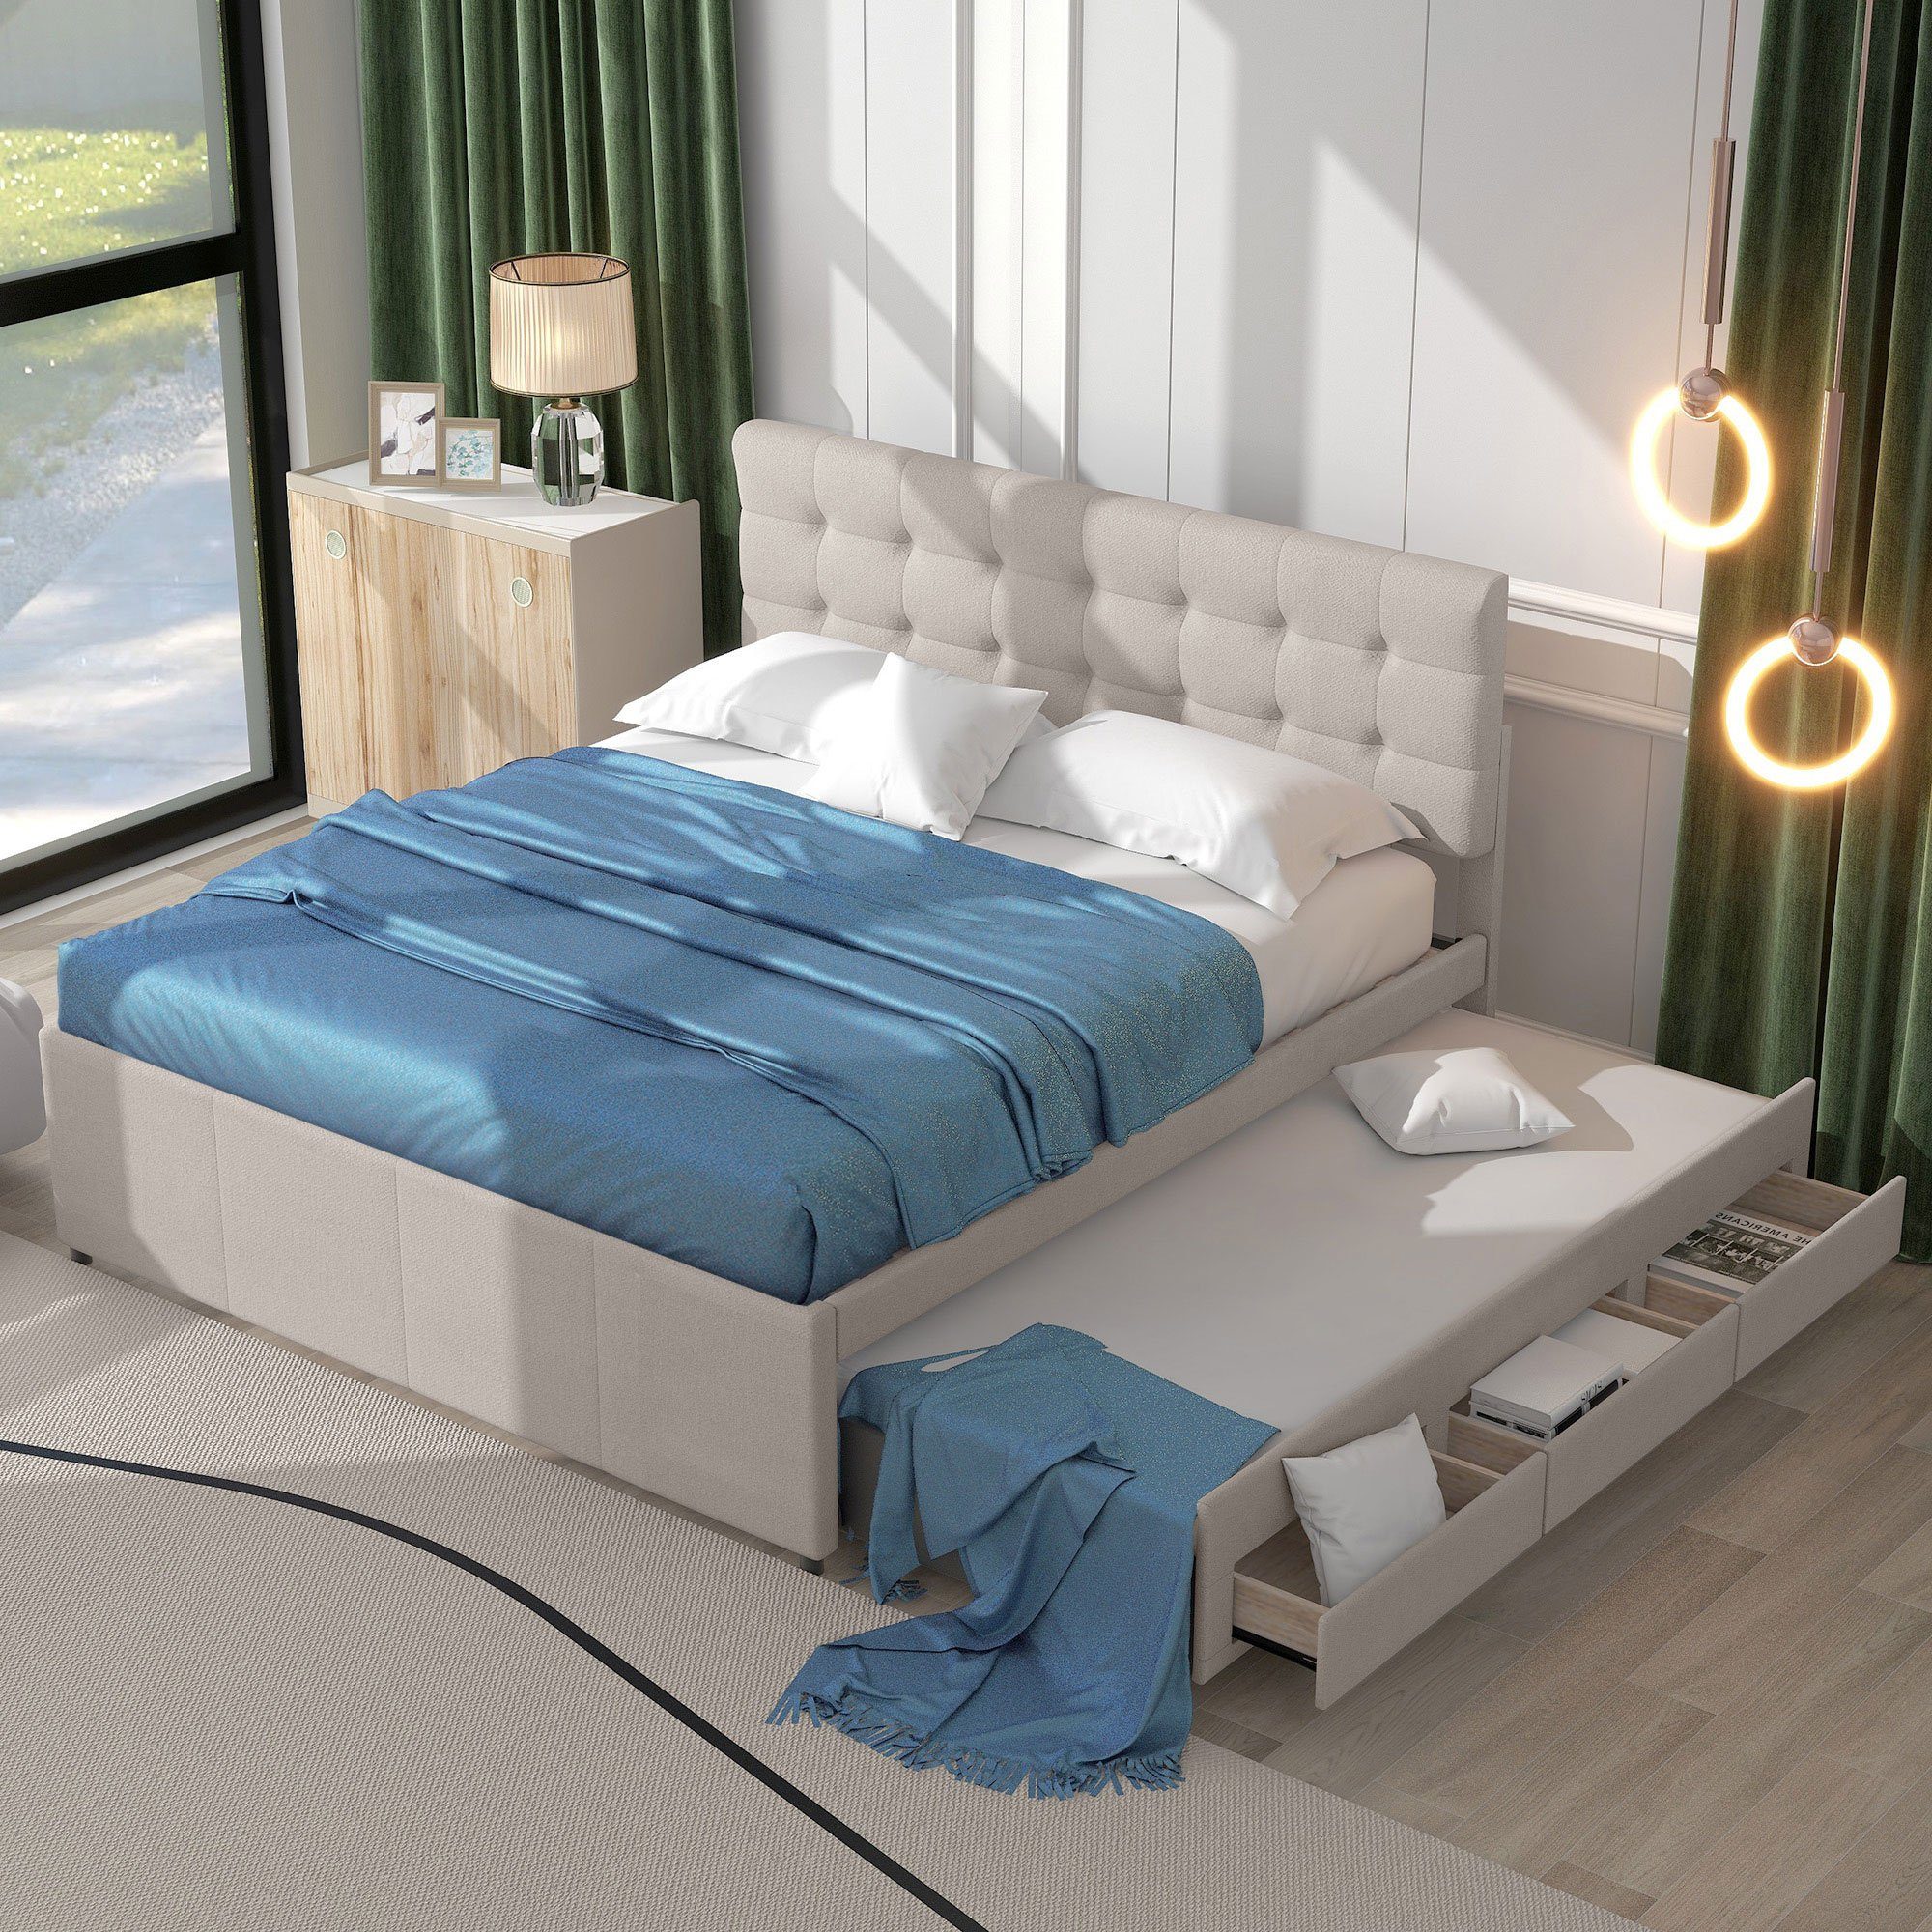 Ulife Polsterbett Doppelbett ausziehbares Bett Familienbett, Verstellbares Kopfteil, mit drei Schubladen, 140x200cm Beige